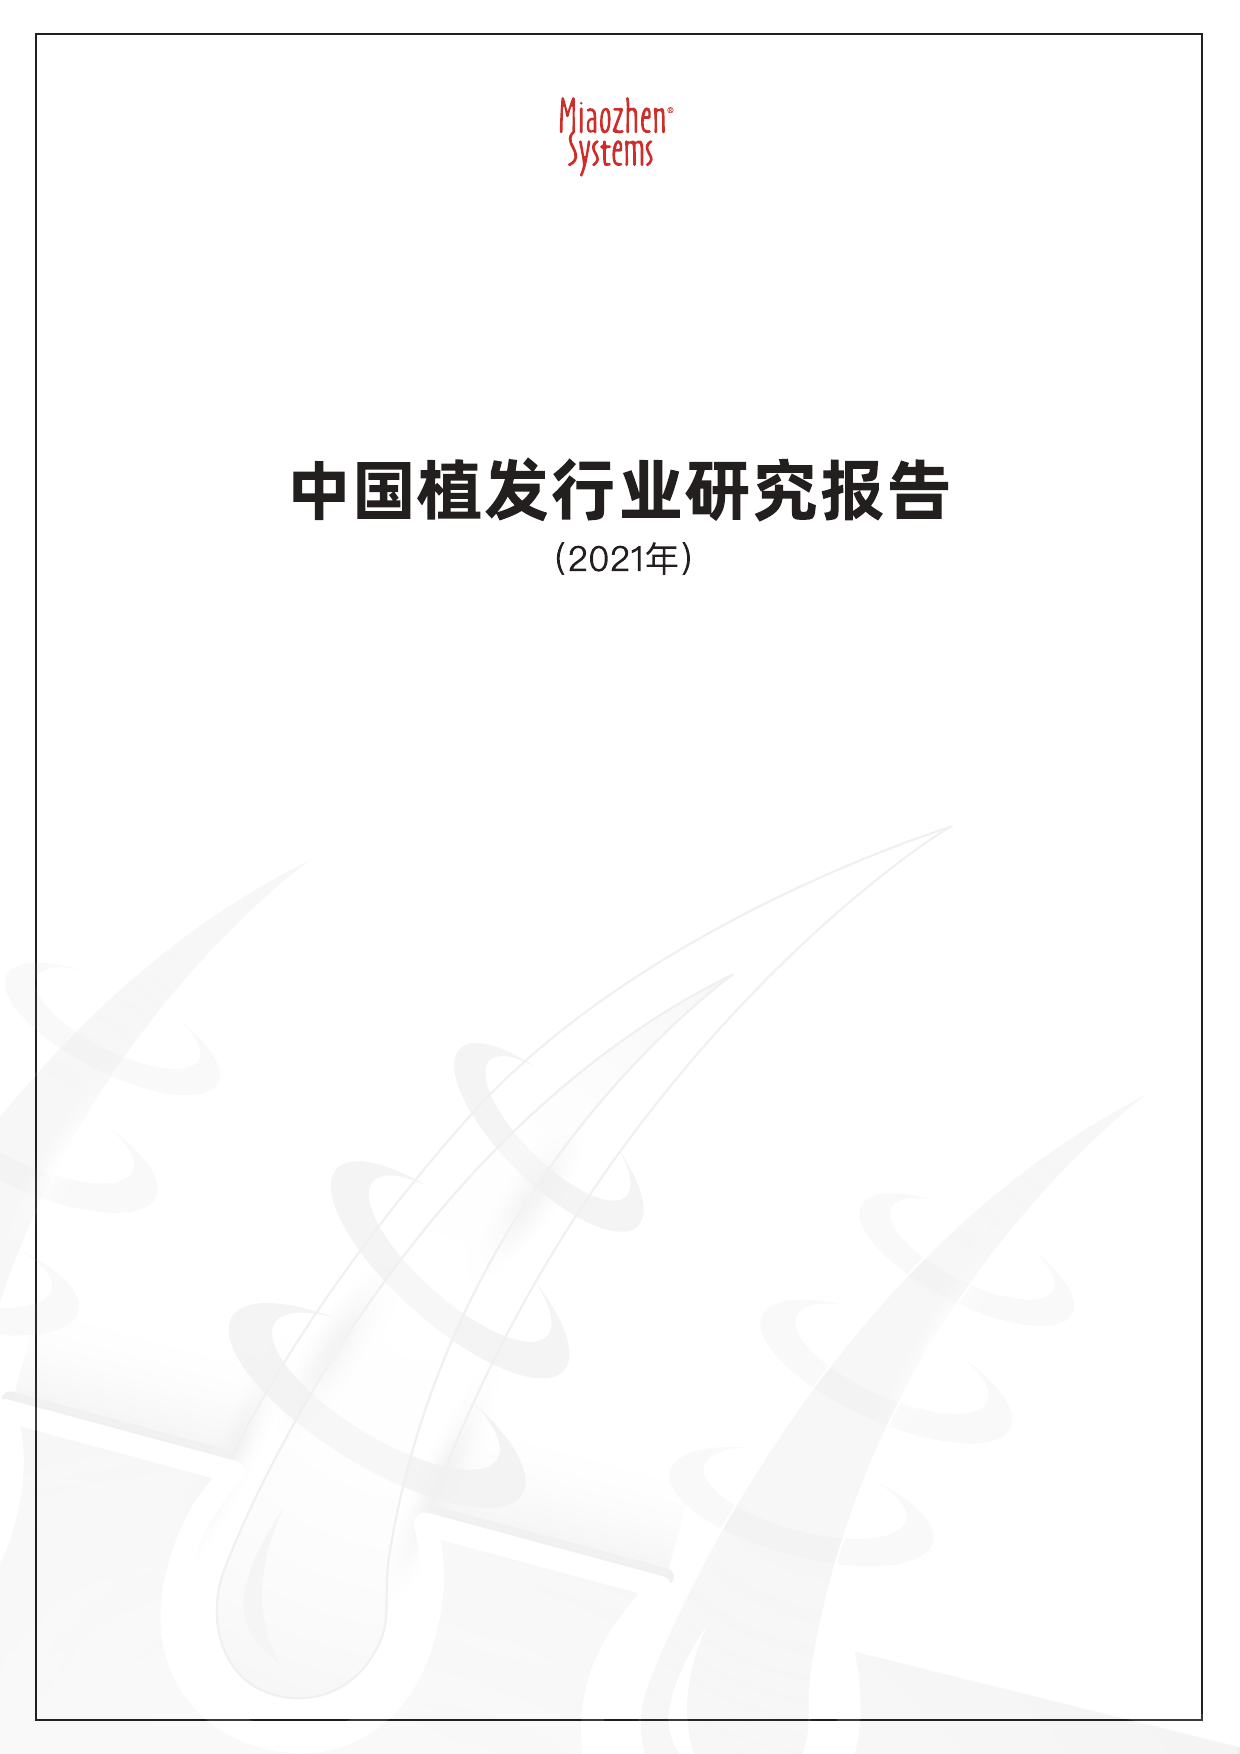 2021中国植发行业报告-秒针-2021-27页